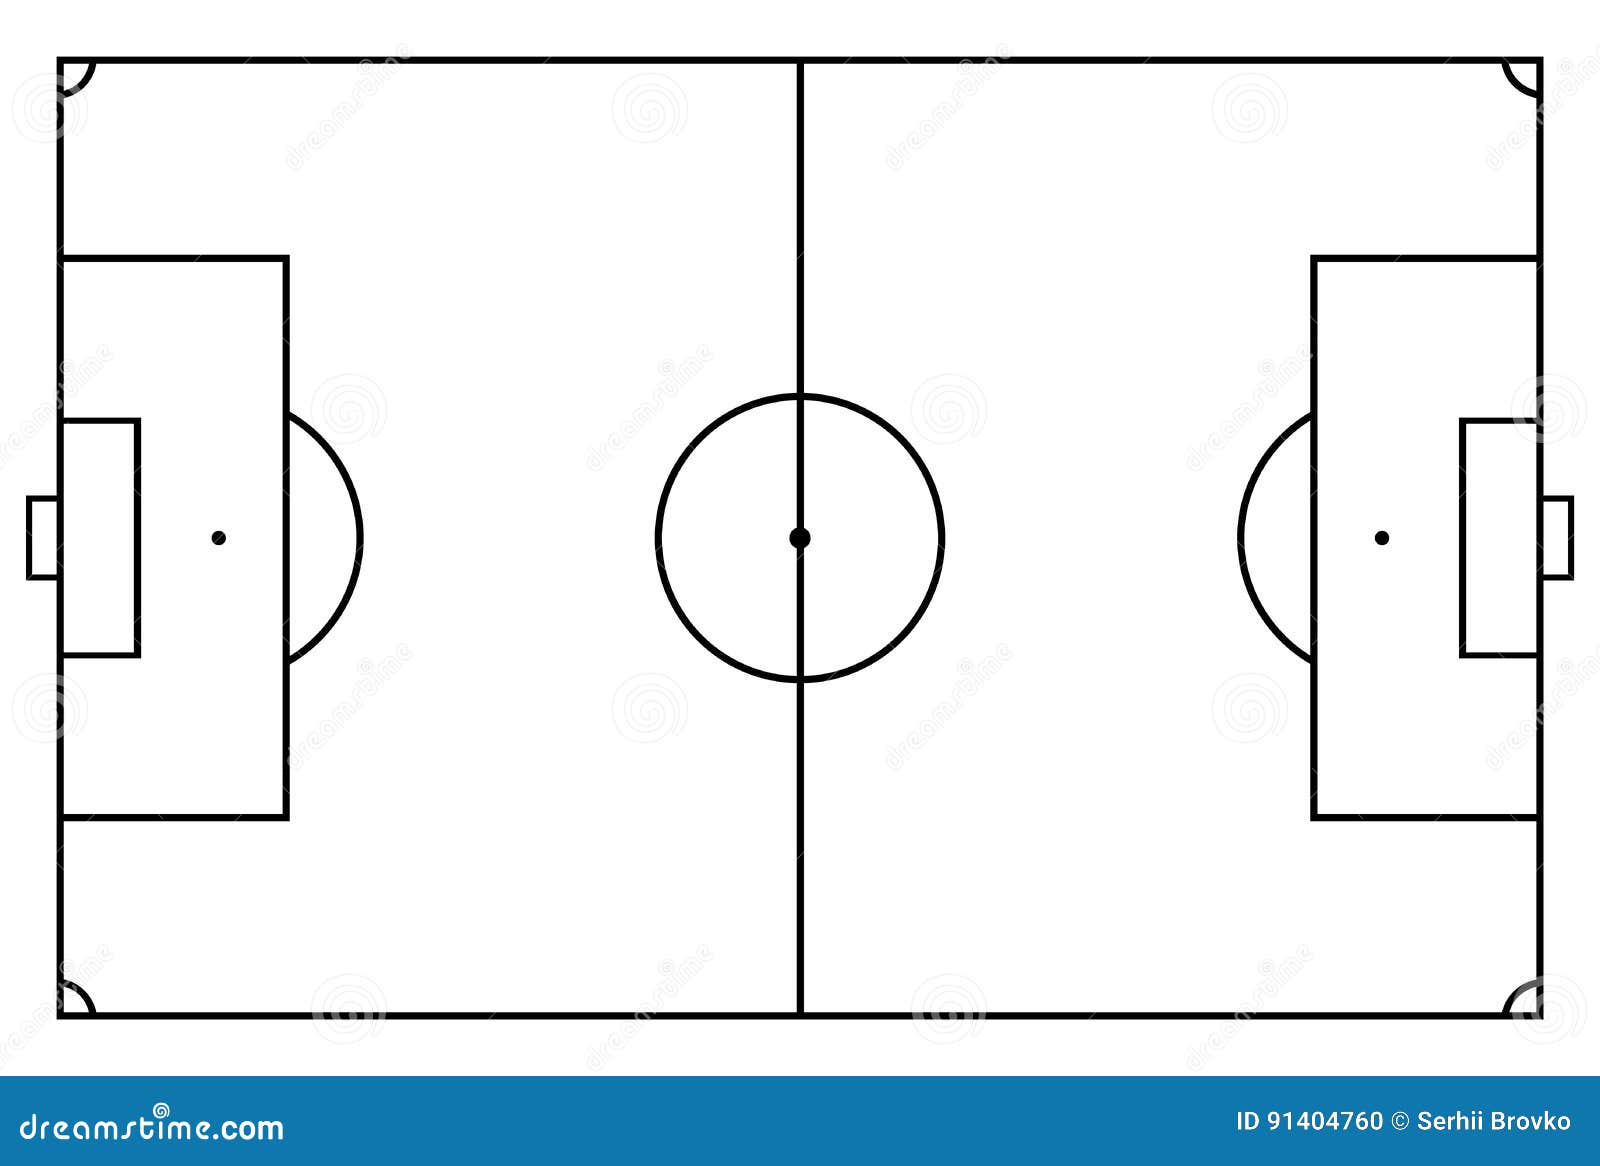 Soccer Field Stock Vector Illustration Of Soccer Play